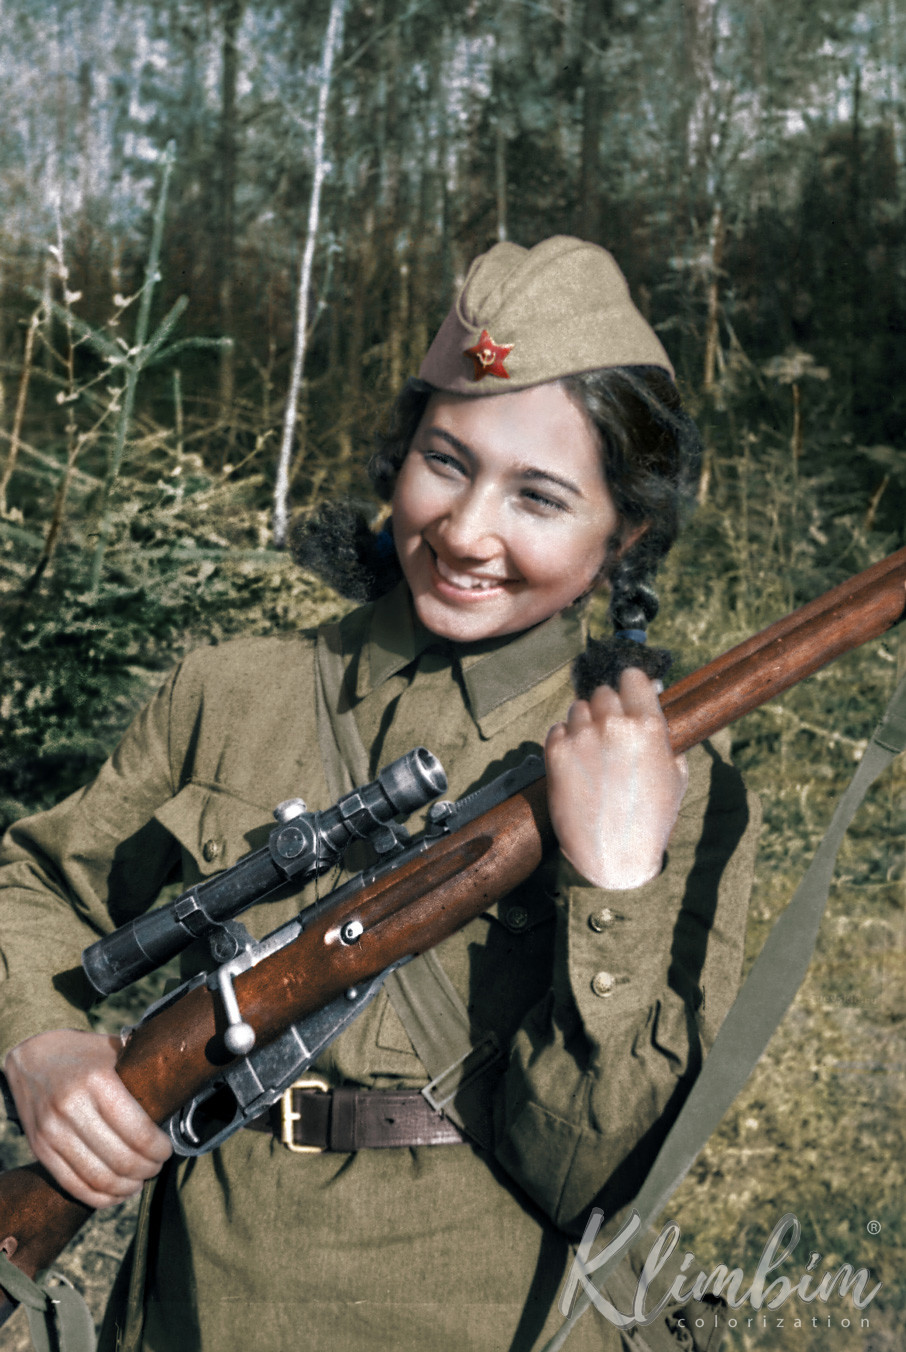 Зиба Ганиева — первая азербайджанская женщина-снайпер. 16 октября 1941 года добровольно вступила в ряды Красной армии. Уничтожила 20 немцев, хотя сама позже призналась: "Я убила 129 фашистов". Фото: © Flickr/Olga